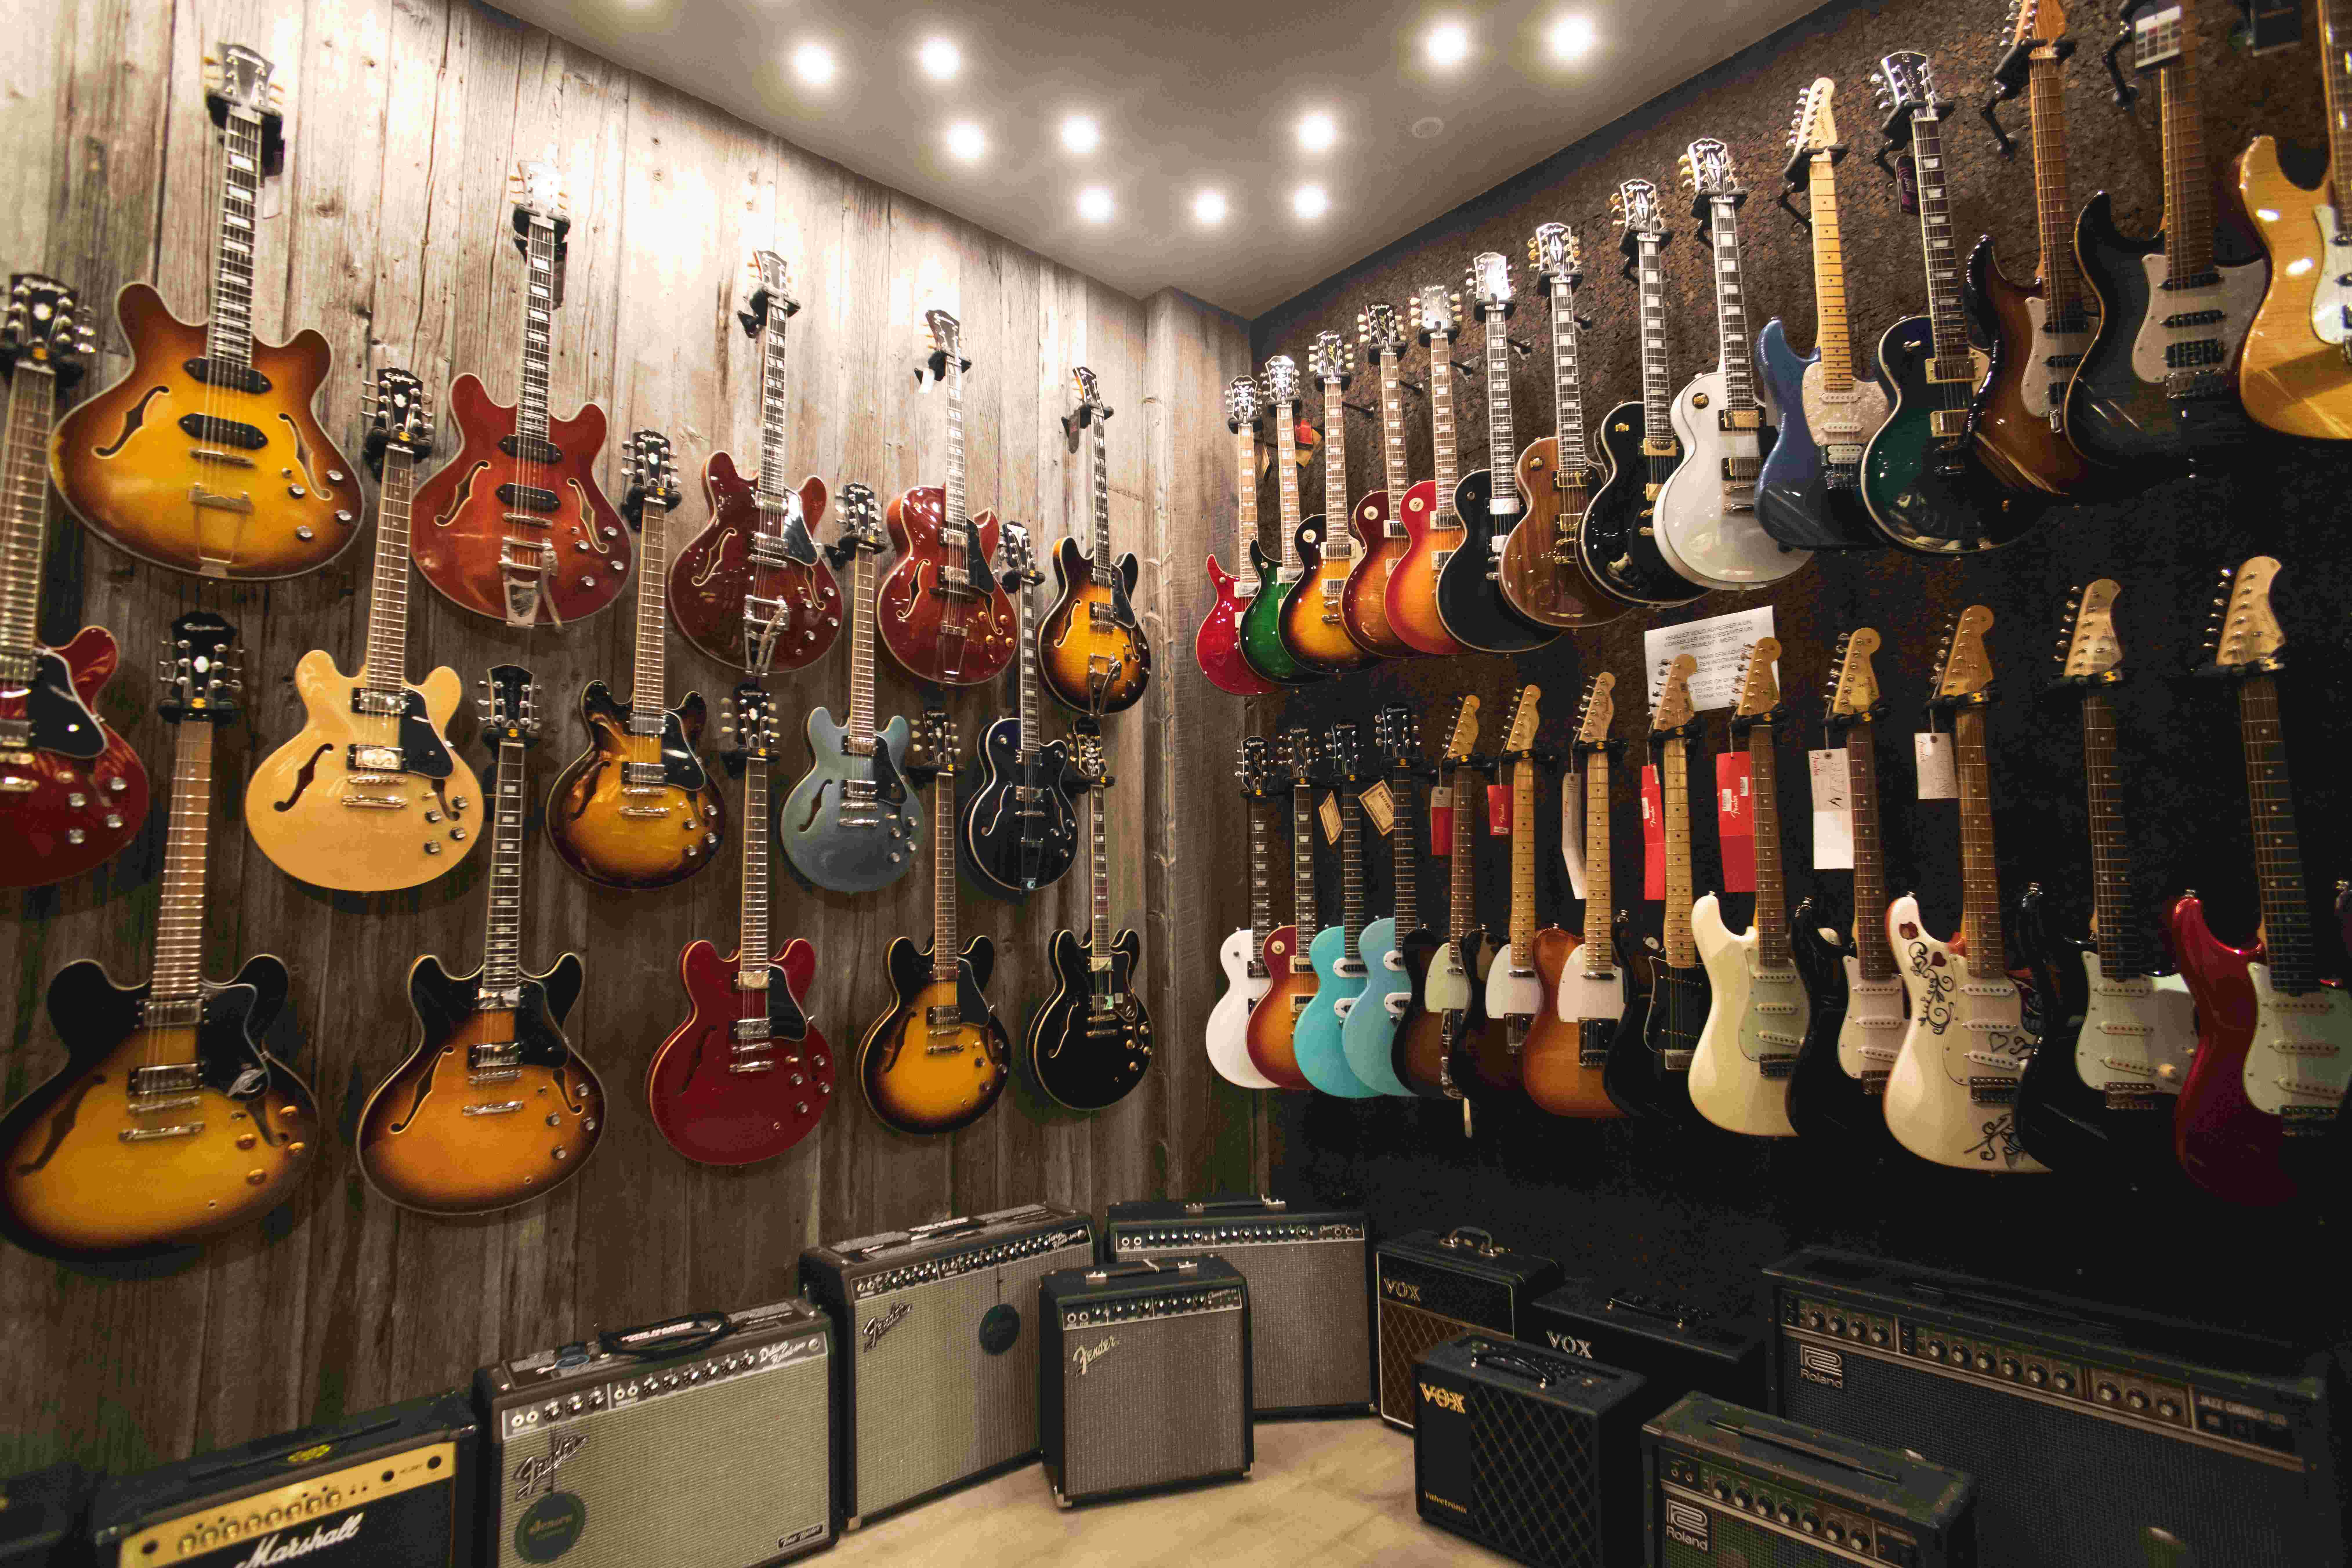 Veranderlijk eigendom Heerlijk Brussel heeft met Star's Music een bijzondere gitaarwinkel in huis -  Gitarist.nl